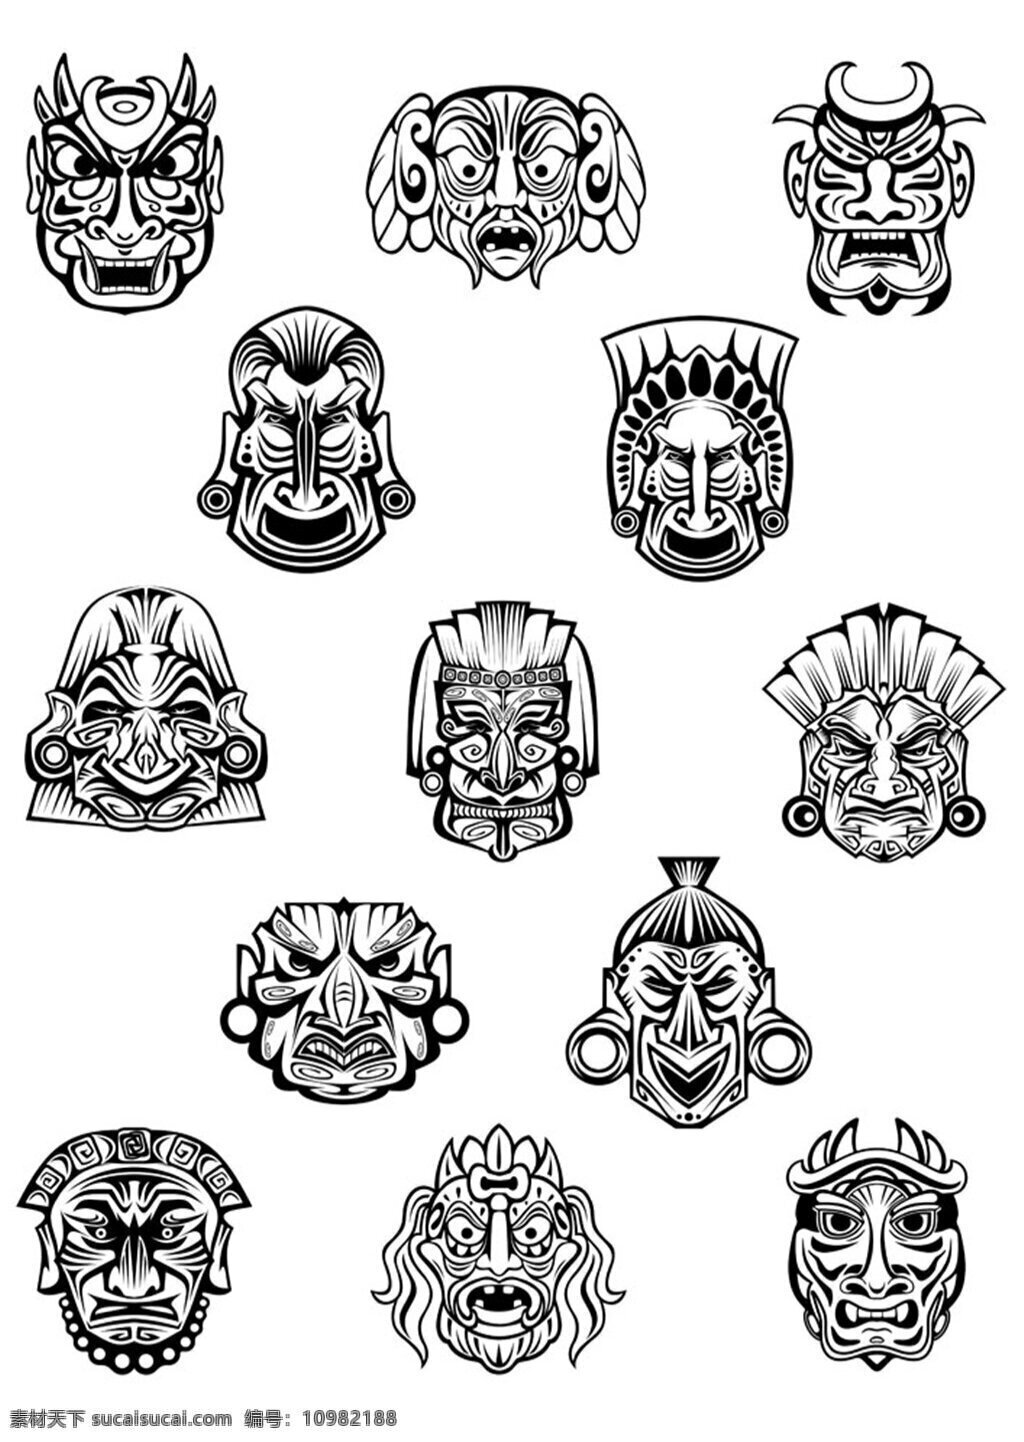 黑色的面具 面具 复古面具 各种面具模板 面具设计 面具图片下载